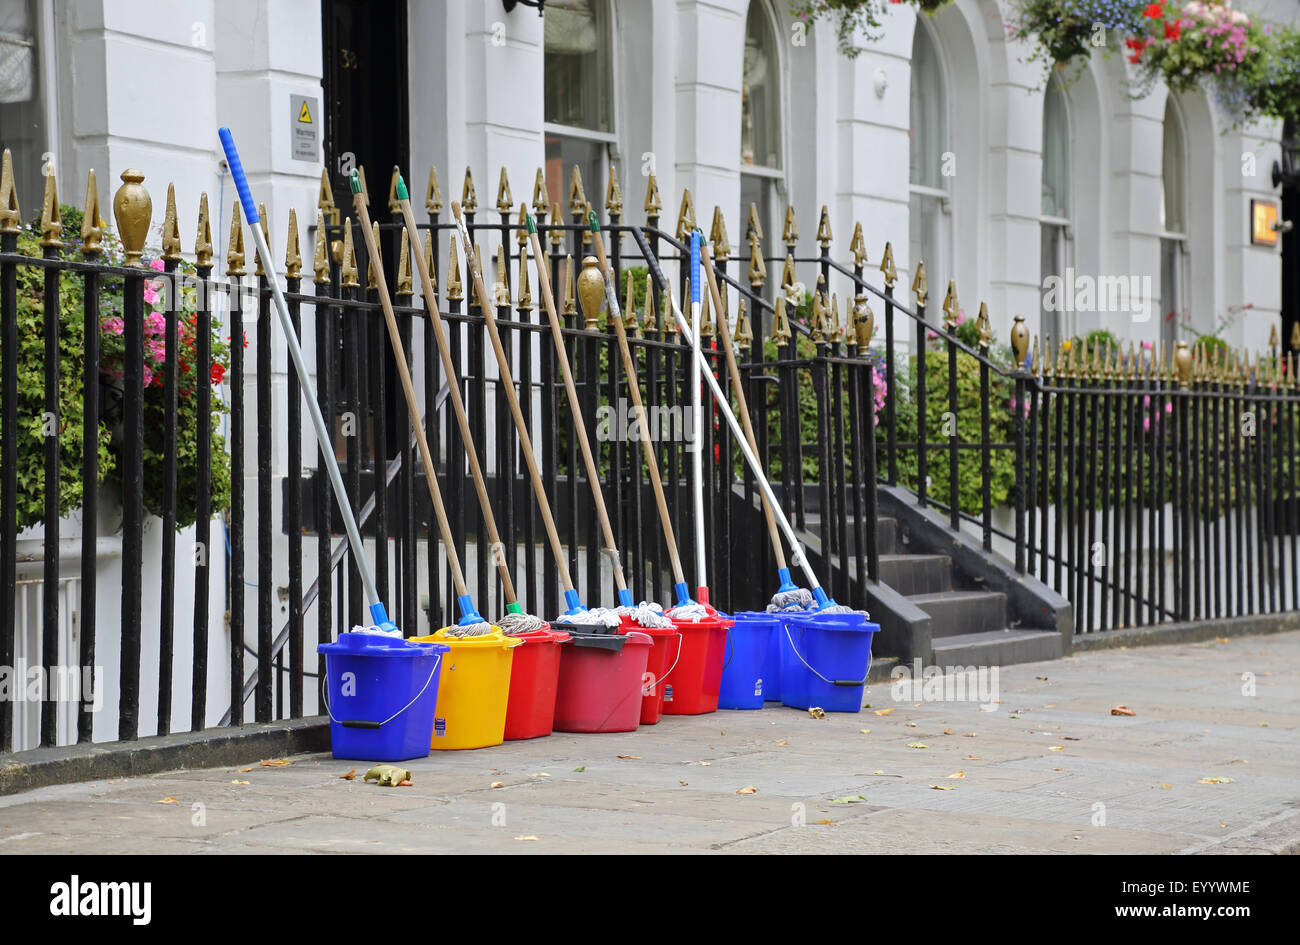 Nettoyage du matériel d'entrepreneurs alignés à l'extérieur d'une maison géorgienne prestigieux dans le centre de Londres. Vadrouilles montre et des seaux. Banque D'Images